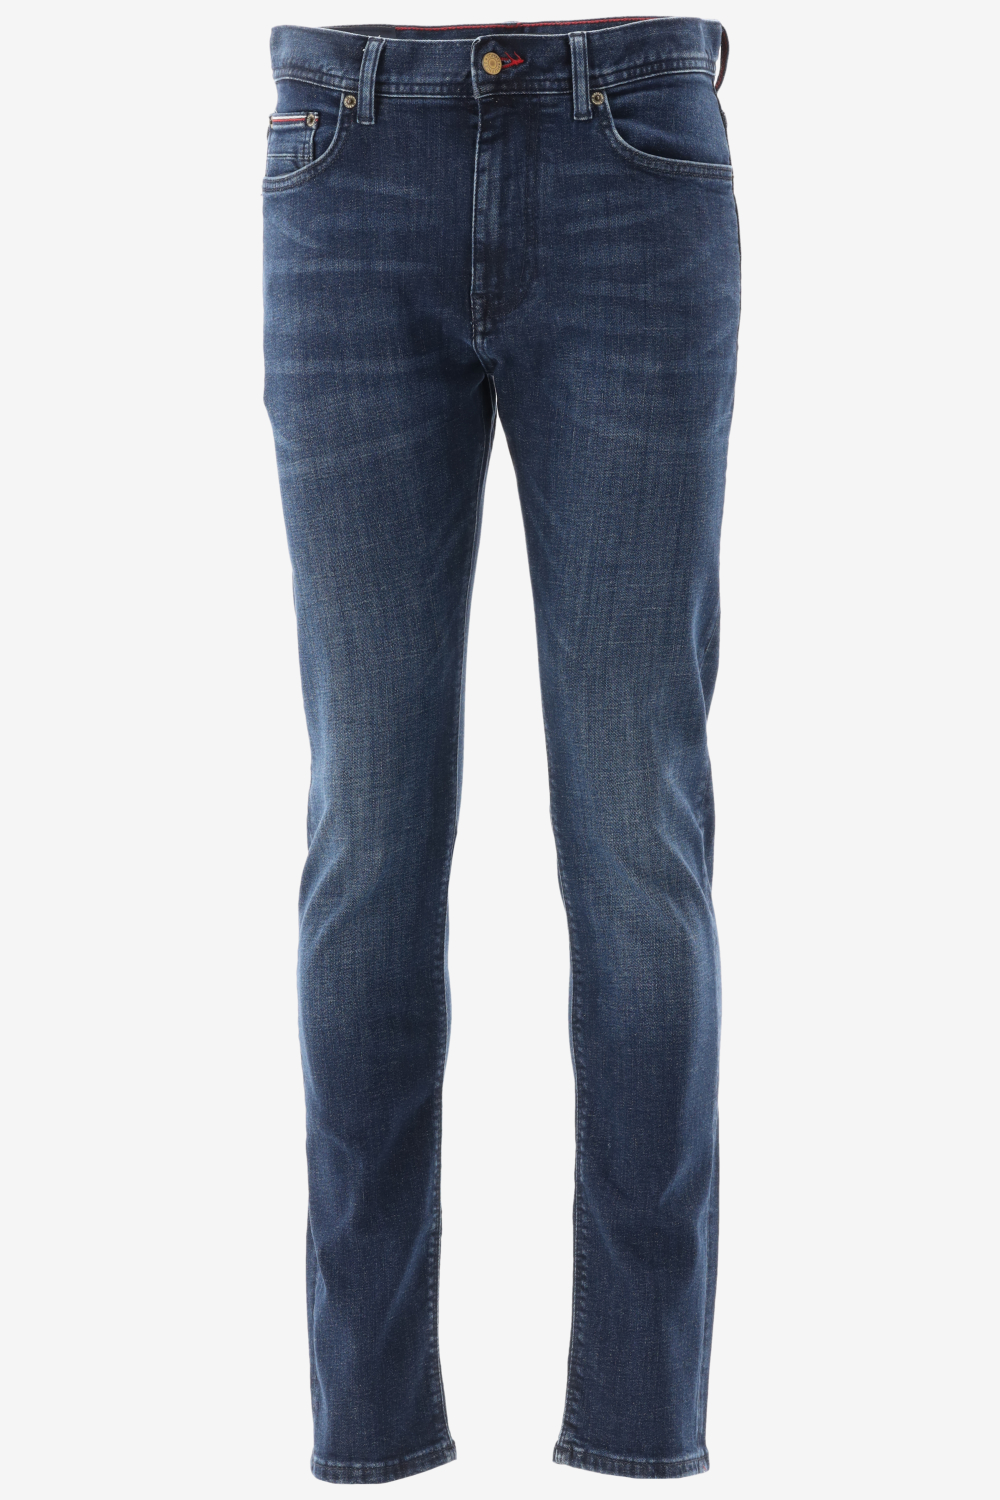 Tommy hilfiger slim fit bleecker slim jeans maat 30-L34